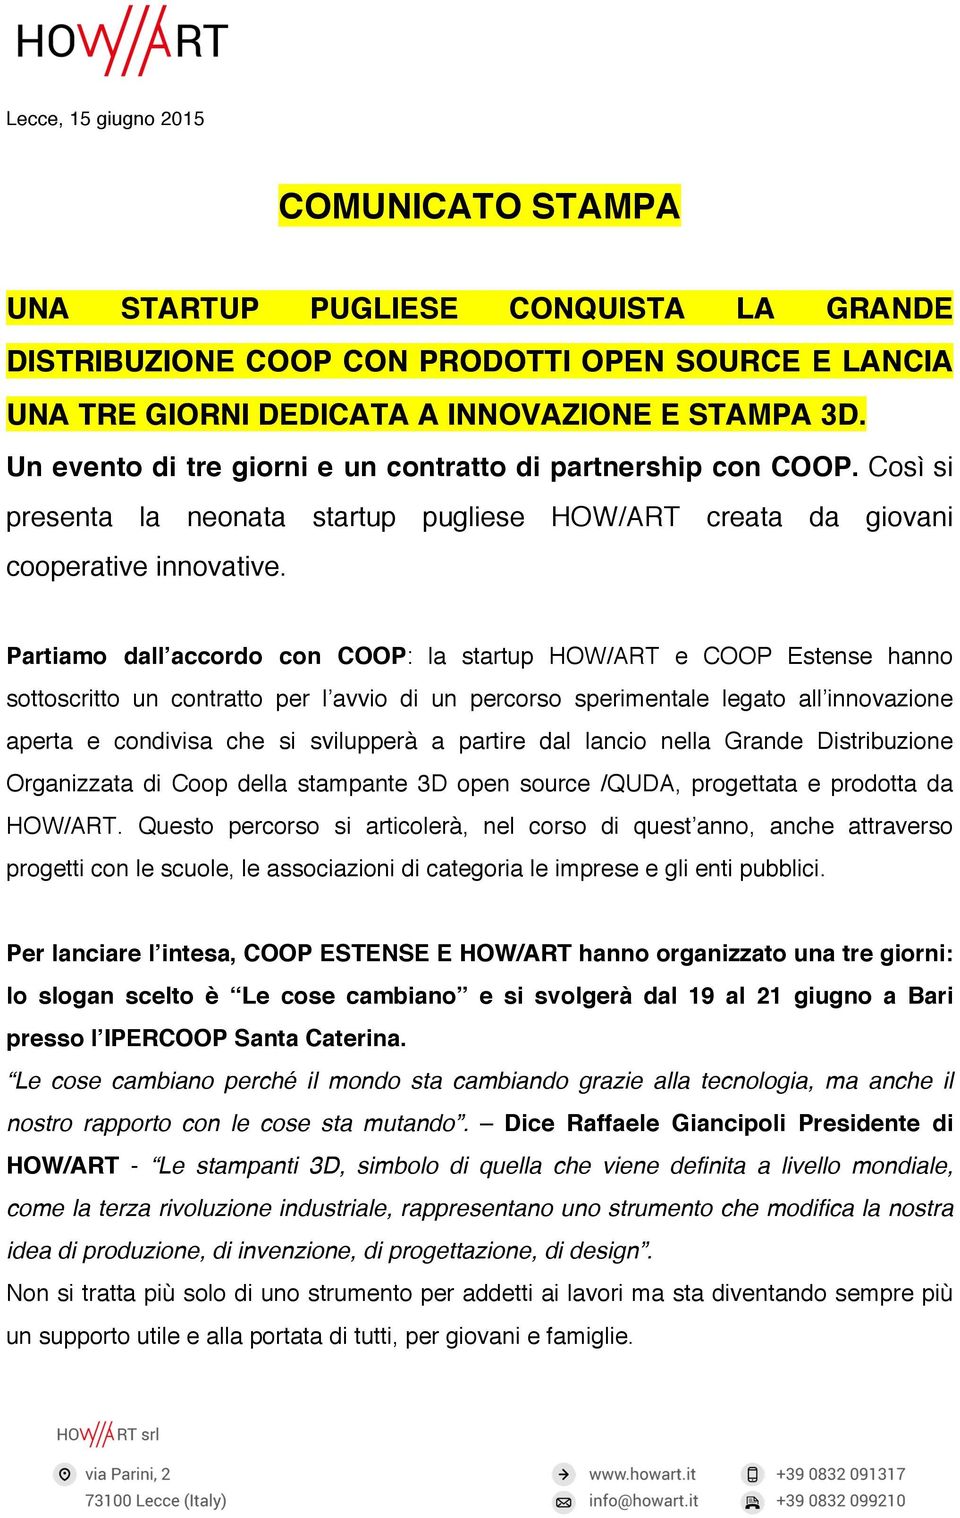 Partiamo dall accordo con COOP: la startup HOW/ART e COOP Estense hanno sottoscritto un contratto per l avvio di un percorso sperimentale legato all innovazione aperta e condivisa che si svilupperà a